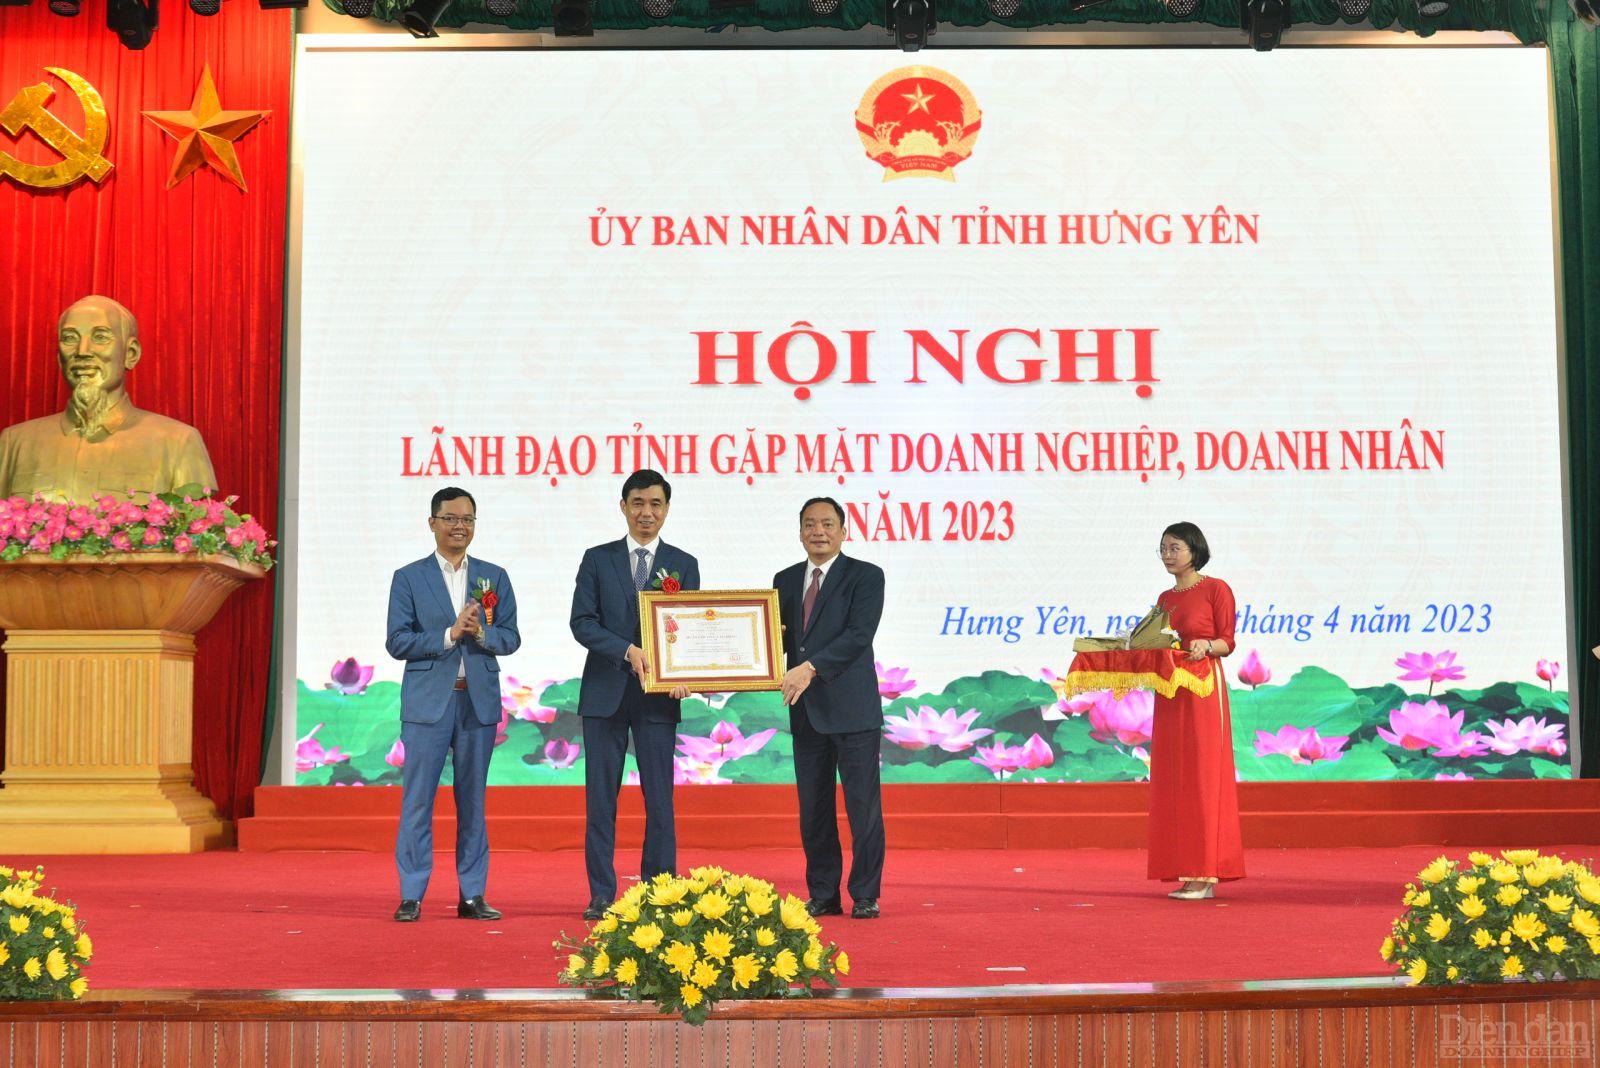 Tổng Giám đốc Tập đoàn Hòa Phát - Nguyễn Việt Thắng nhận Huân chương Lao động hạng Nhì của Chủ tịch nước